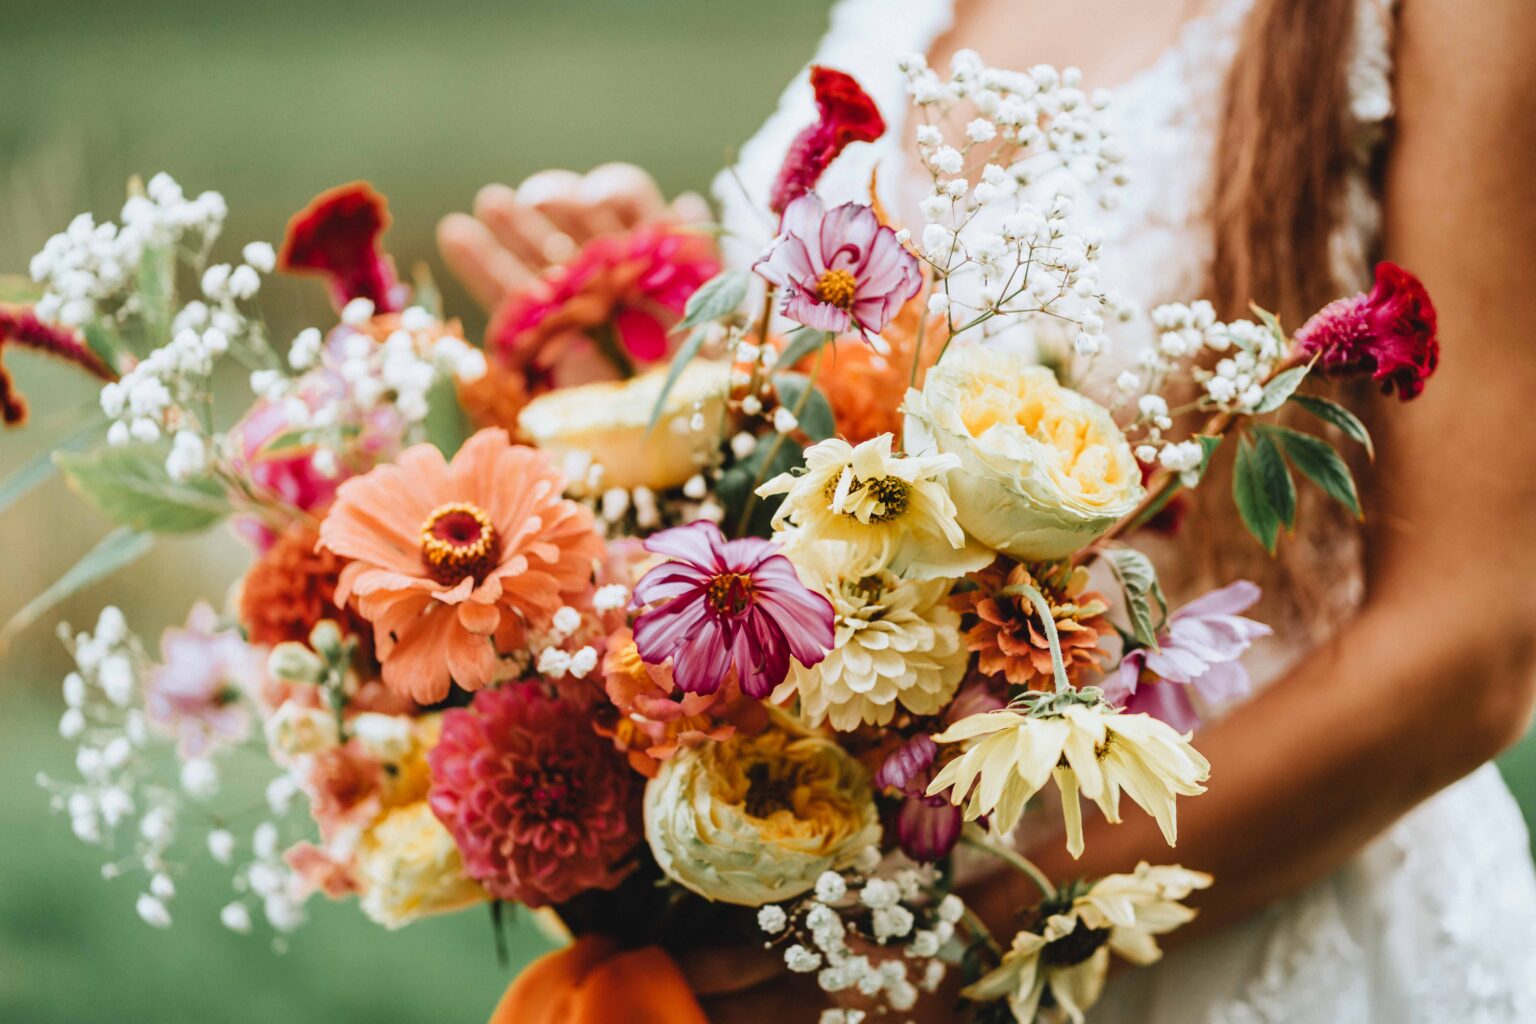 dekoracje wesele, wesele z naturą, kwiaty ślub, kwiaty wesele, dekoracje poznań, organizacja wesela, ślub krok po kroku, bukiety ślubne, bukiety, kwiaty na wesele